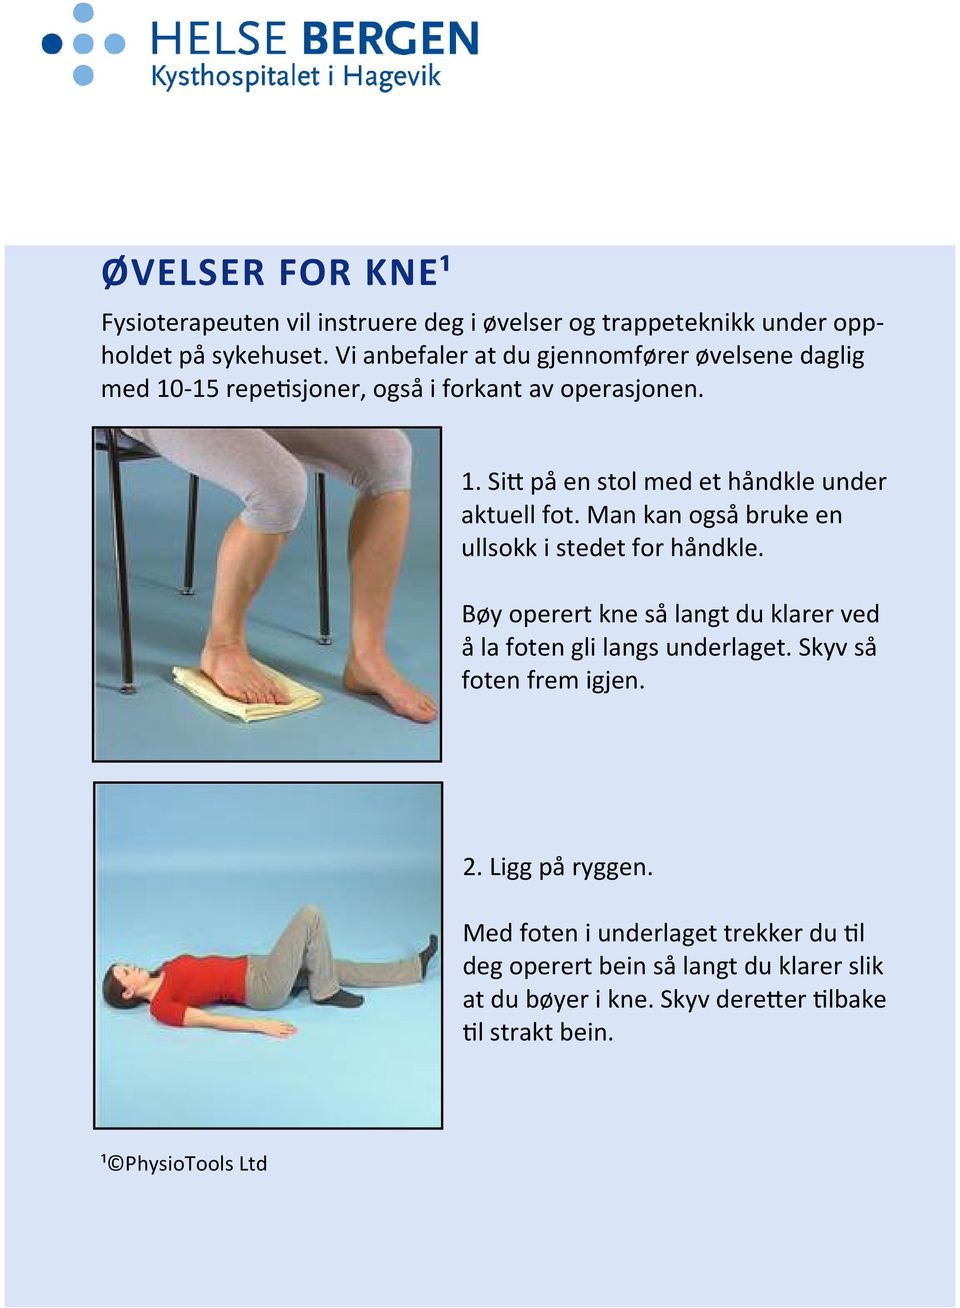 Man kan også bruke en ullsokk i stedet for håndkle. Bøy operert kne så langt du klarer ved å la foten gli langs underlaget. Skyv så foten frem igjen.